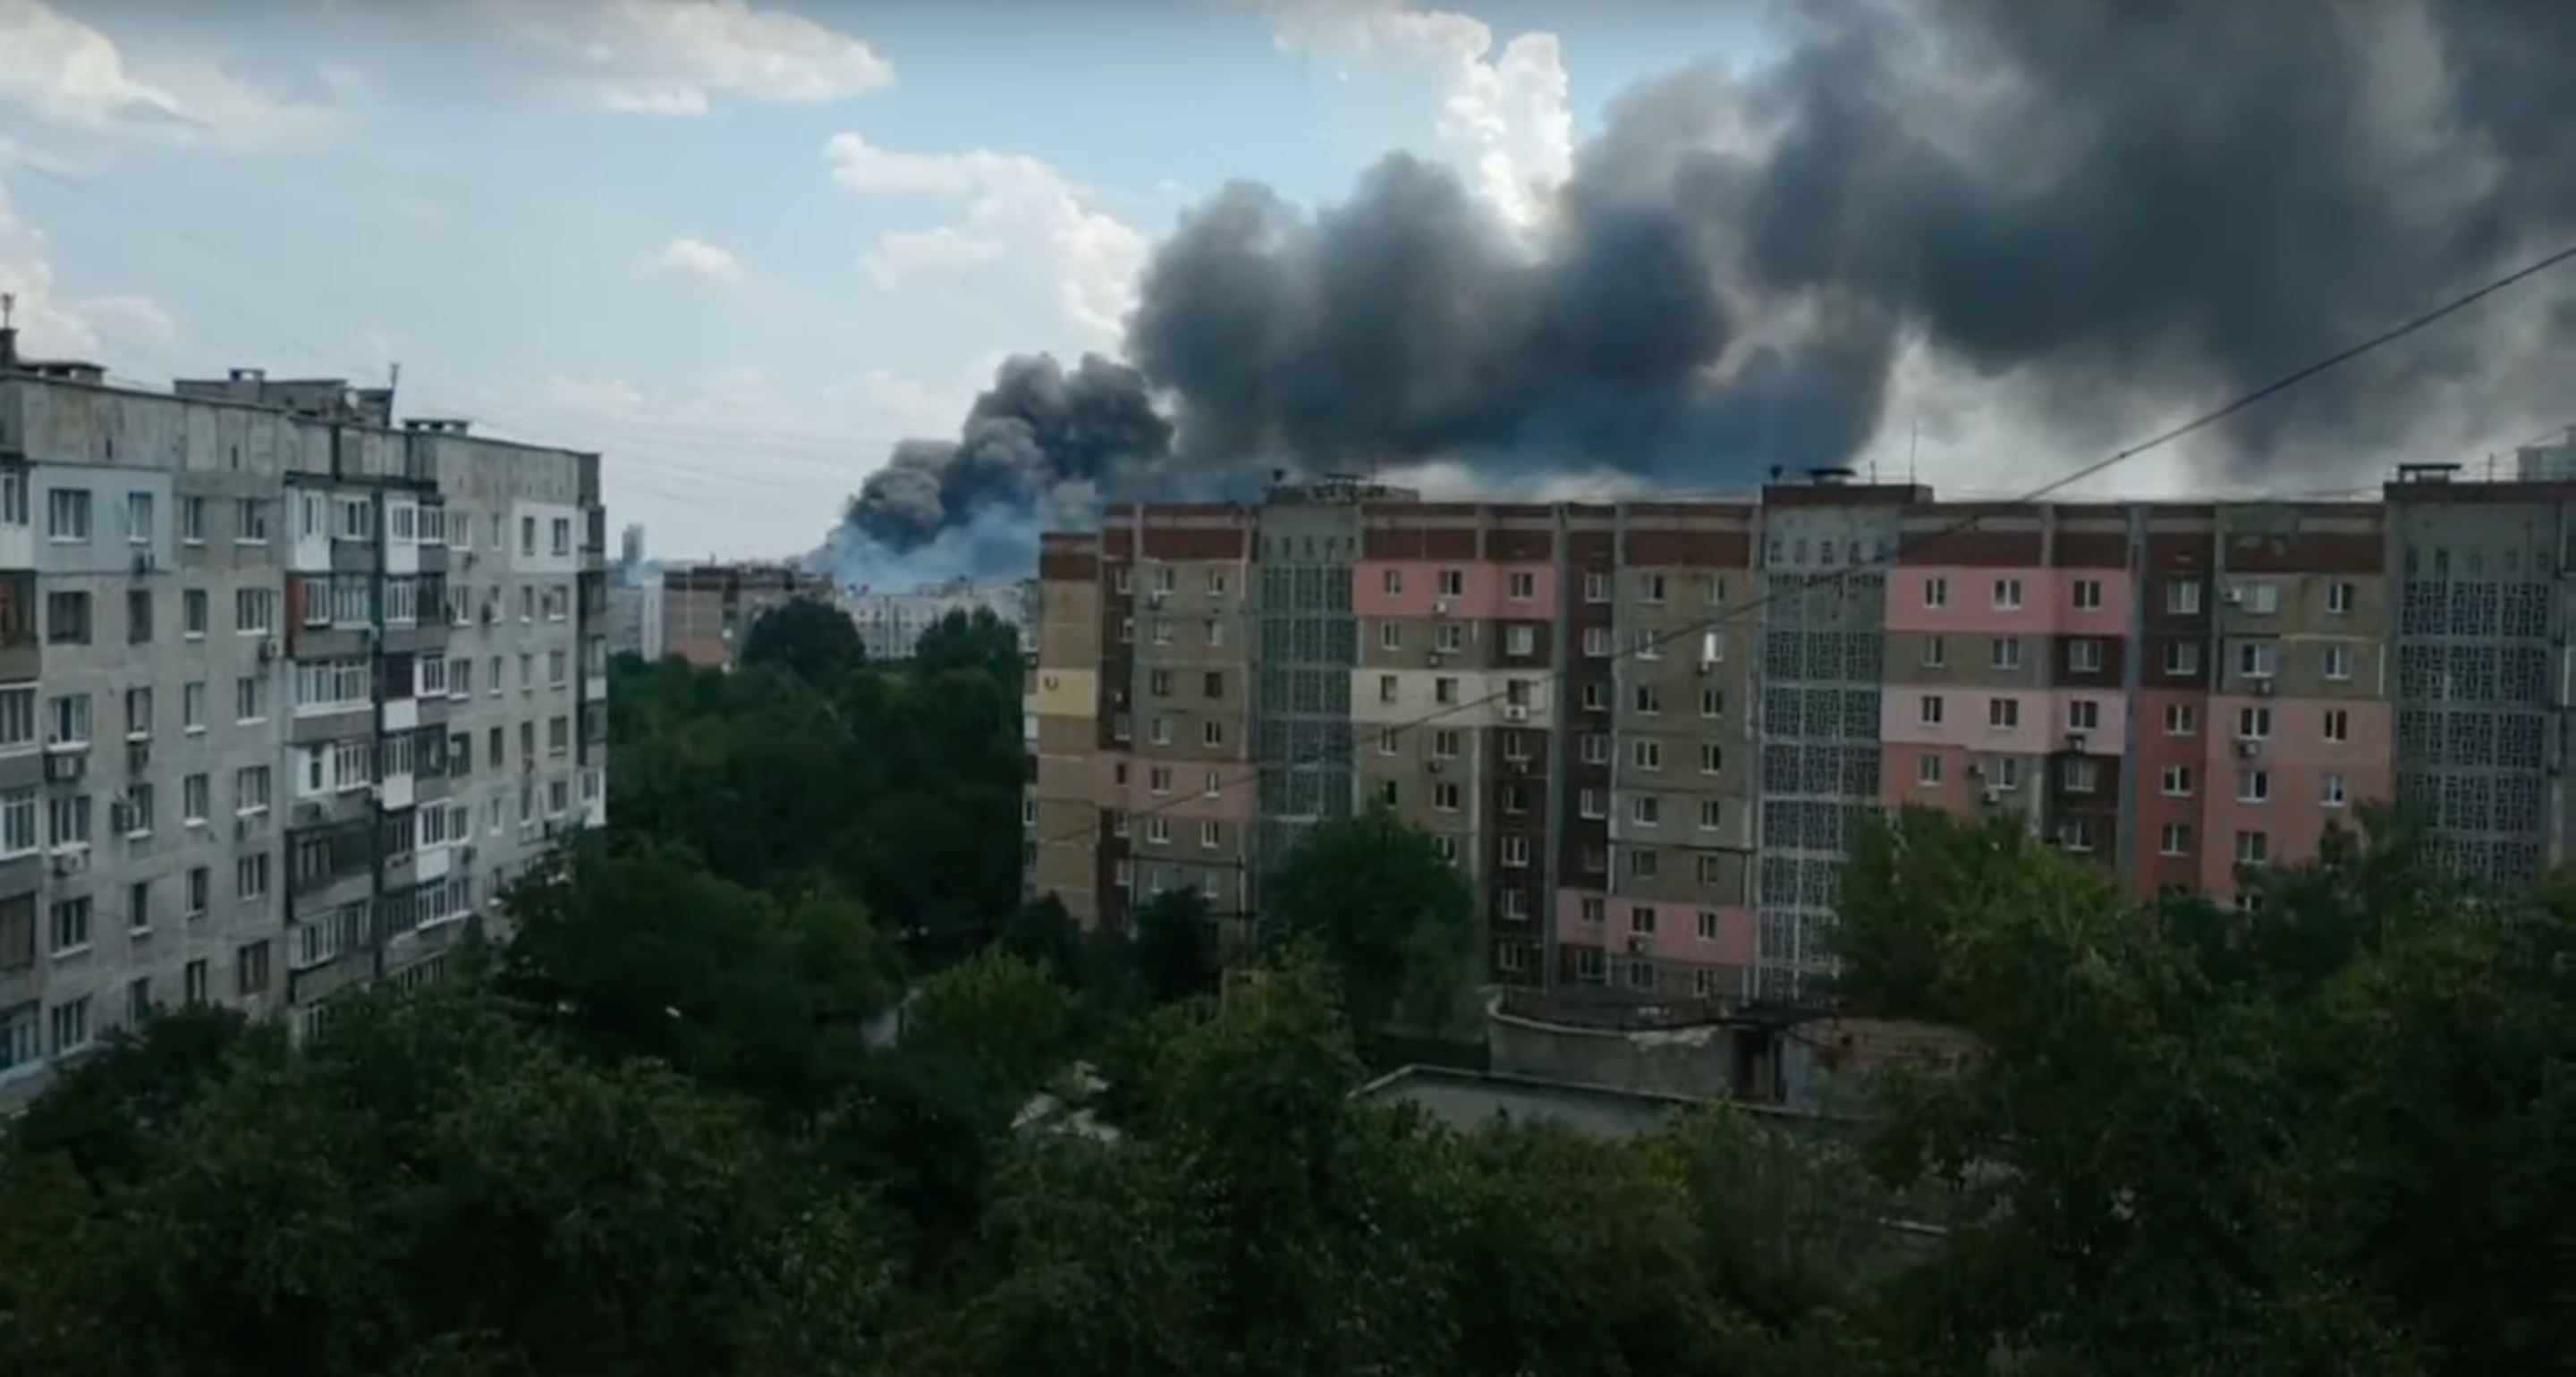 Les HIMARS américains fonctionnent-ils à nouveau ? L'un des plus grands dépôts d'armes russes brûle dans la région occupée de Donetsk